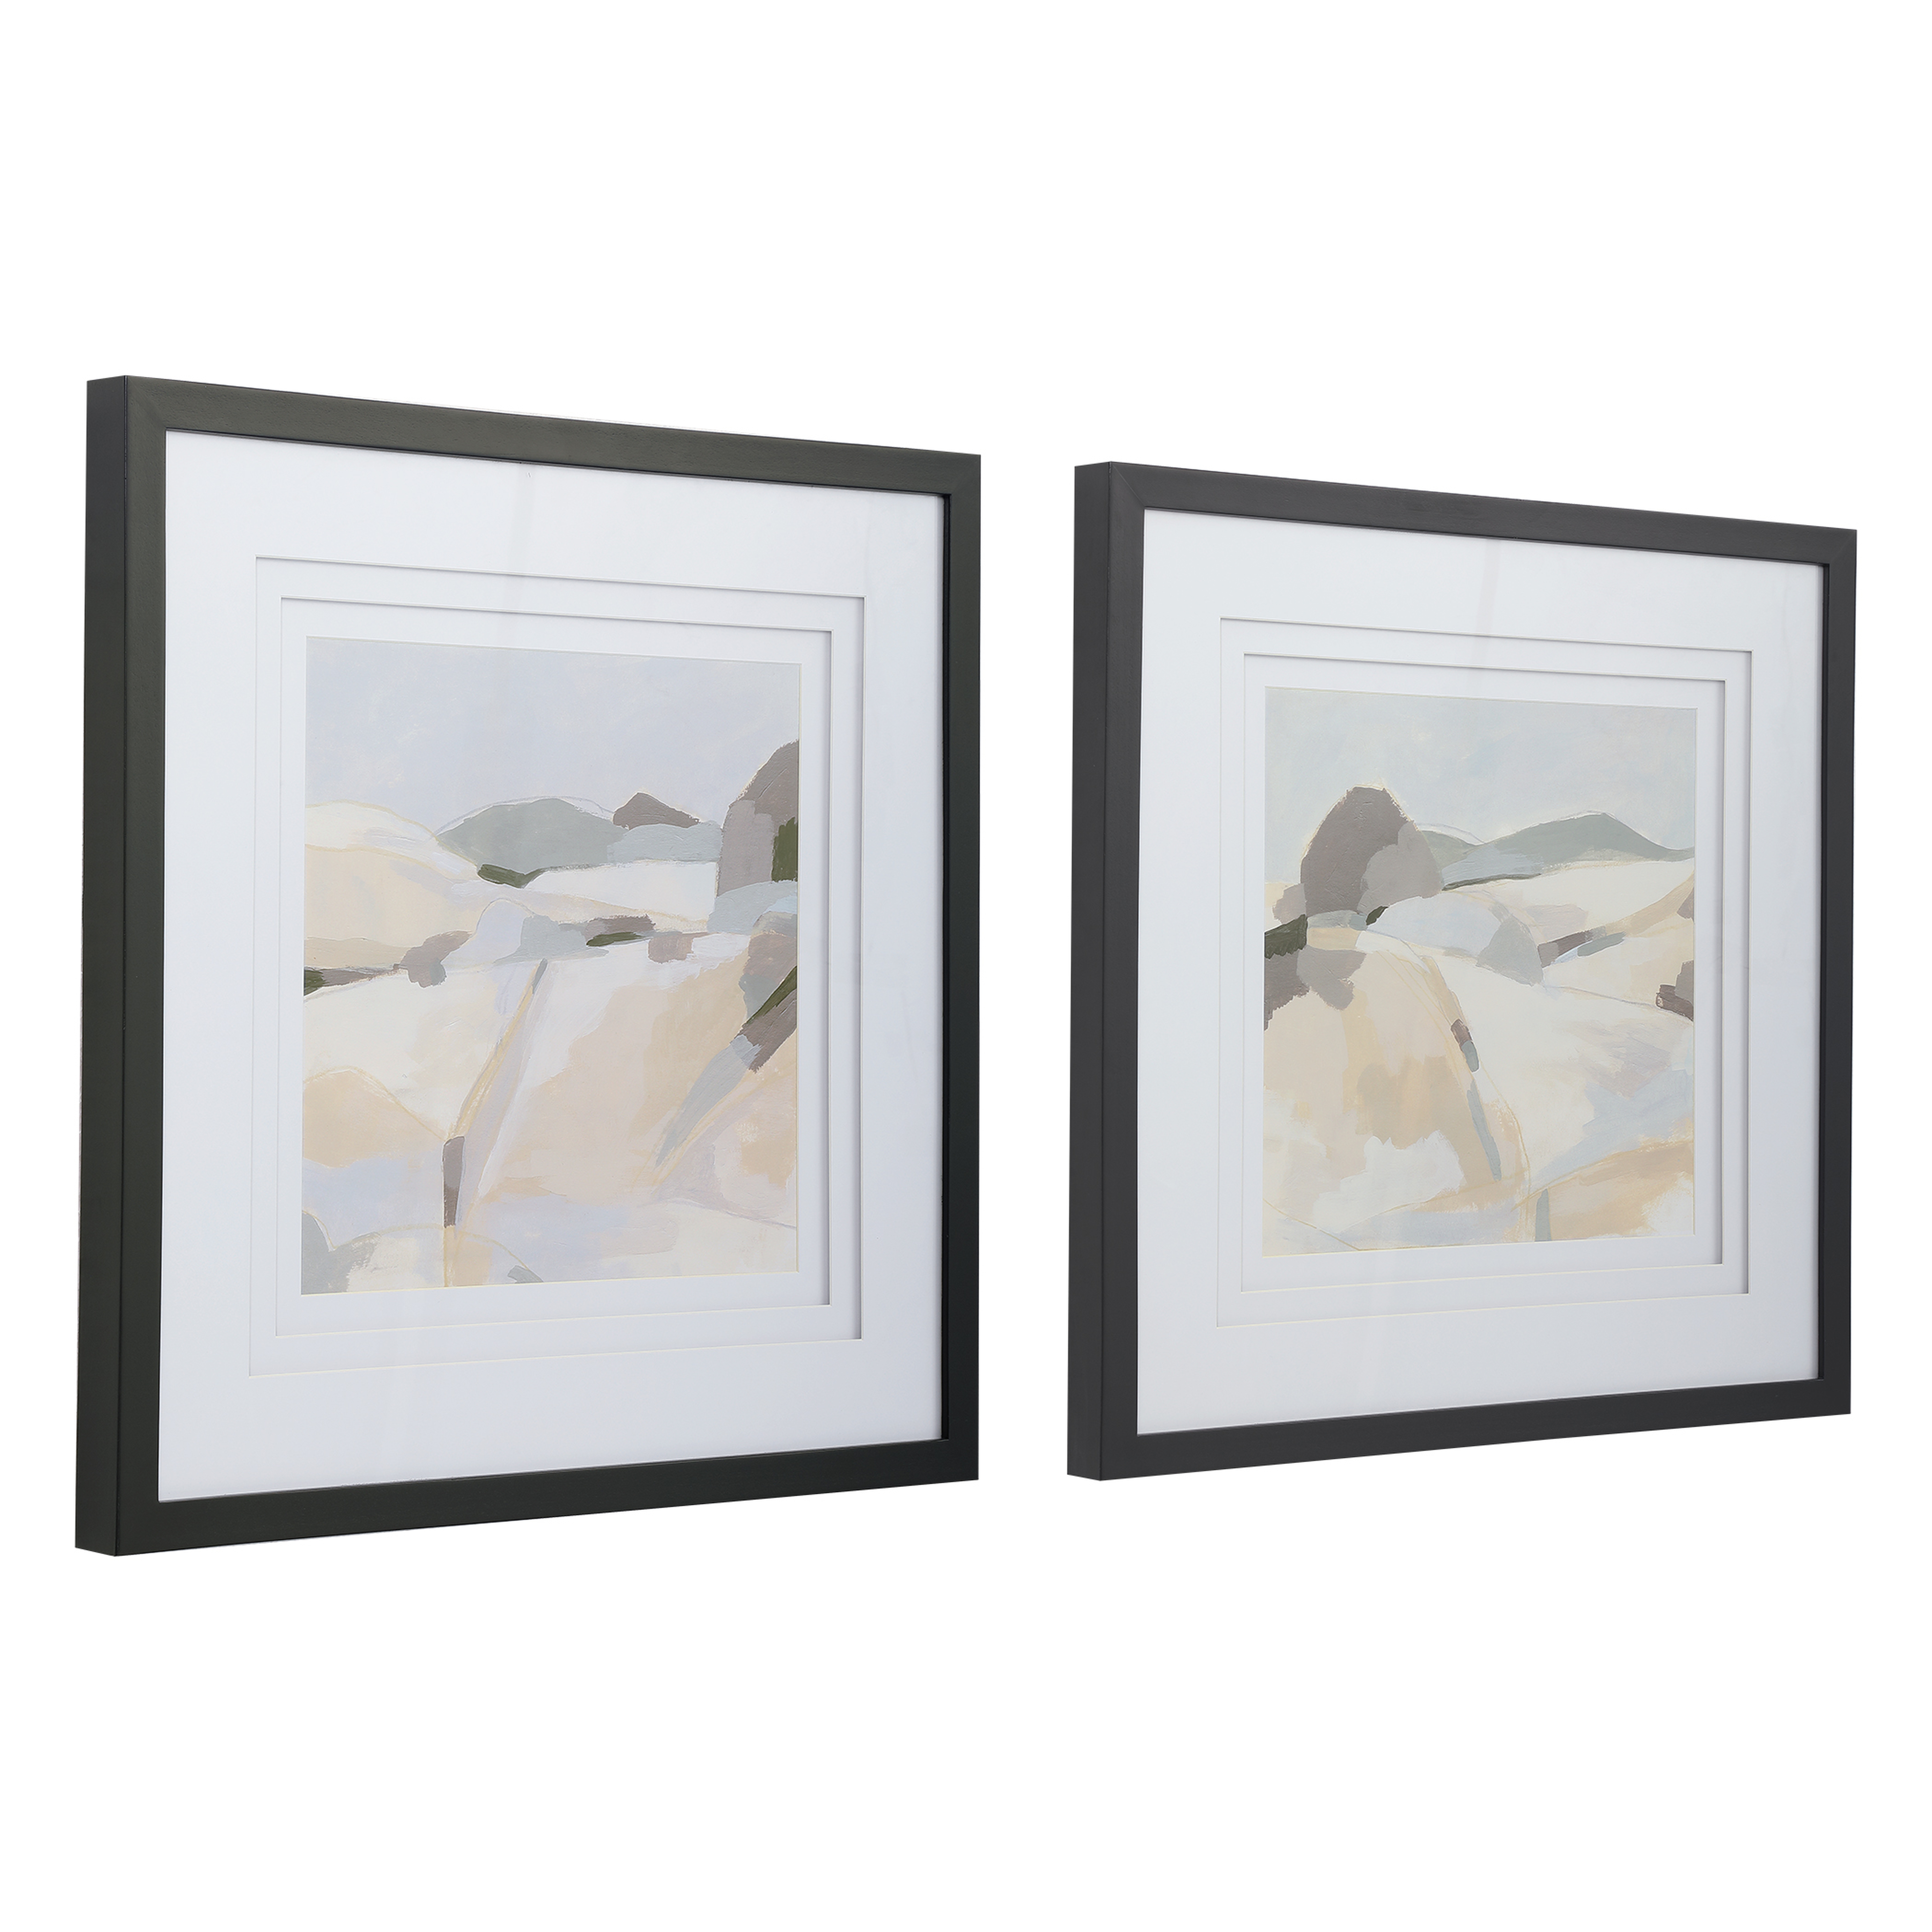 Framed Western Landscape Prints, Set of 2 - Cove Goods